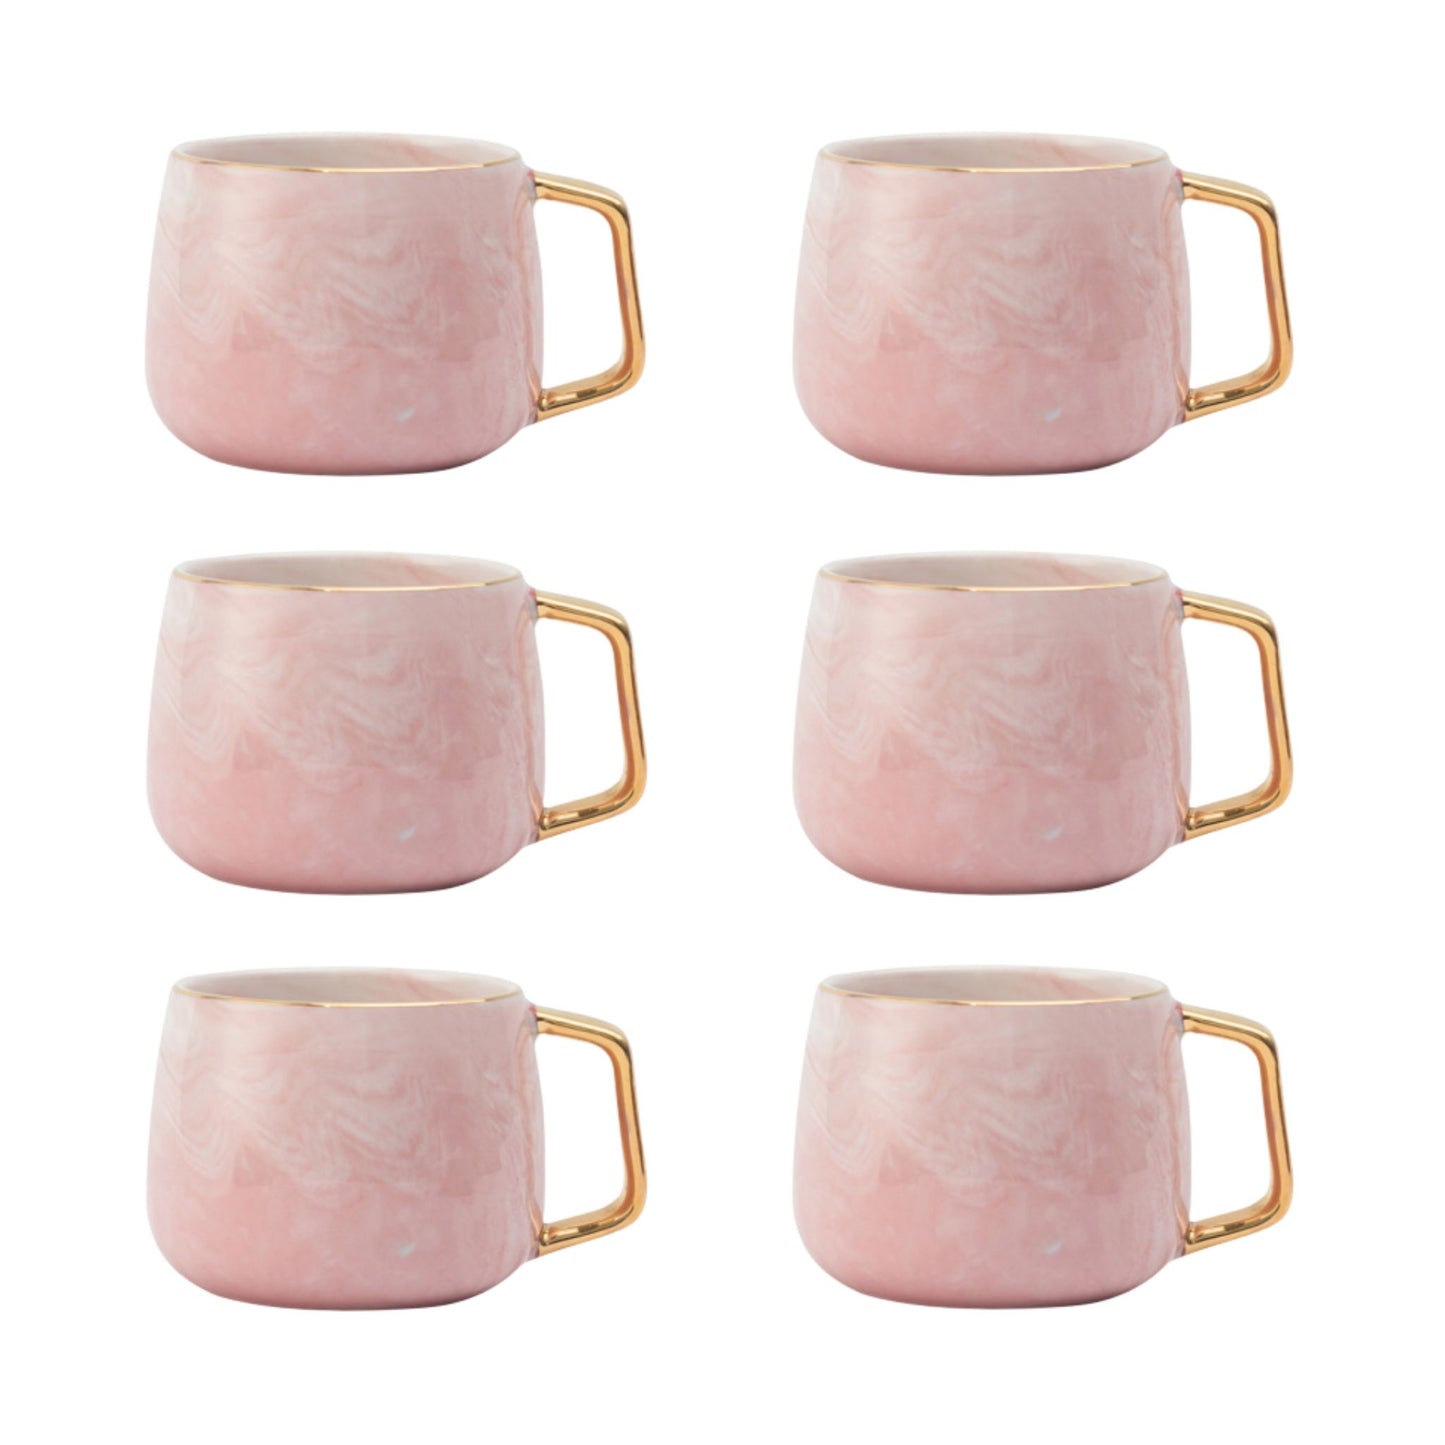 Rosa Marmor Tasse Eckiger Goldhenkel Schöne Tassen zum Verschenken Luxus Tassen Set Schönes Marmor Geschirr Luxus Geschirr mit Gold 6er Set